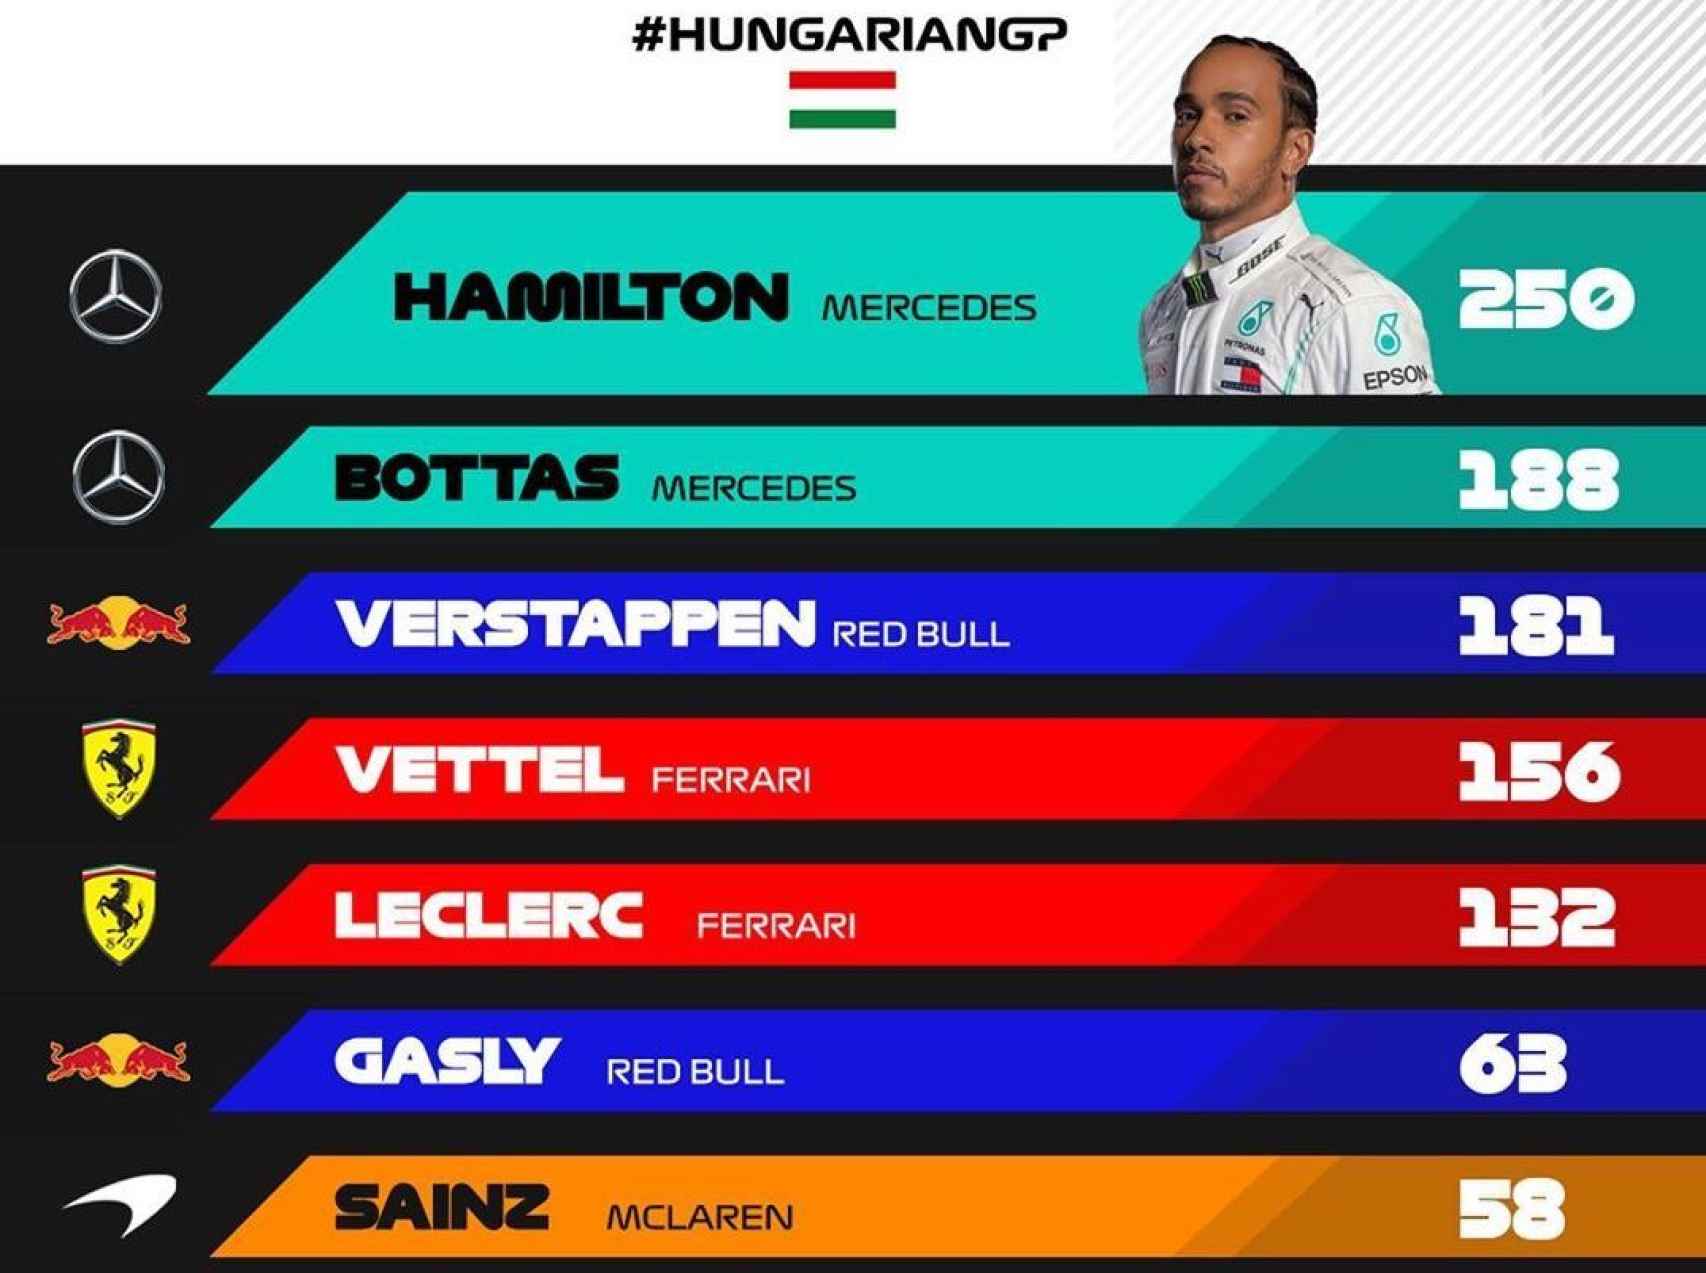 Clasificación del mundial de pilotos tras el GP de Hungría de F1